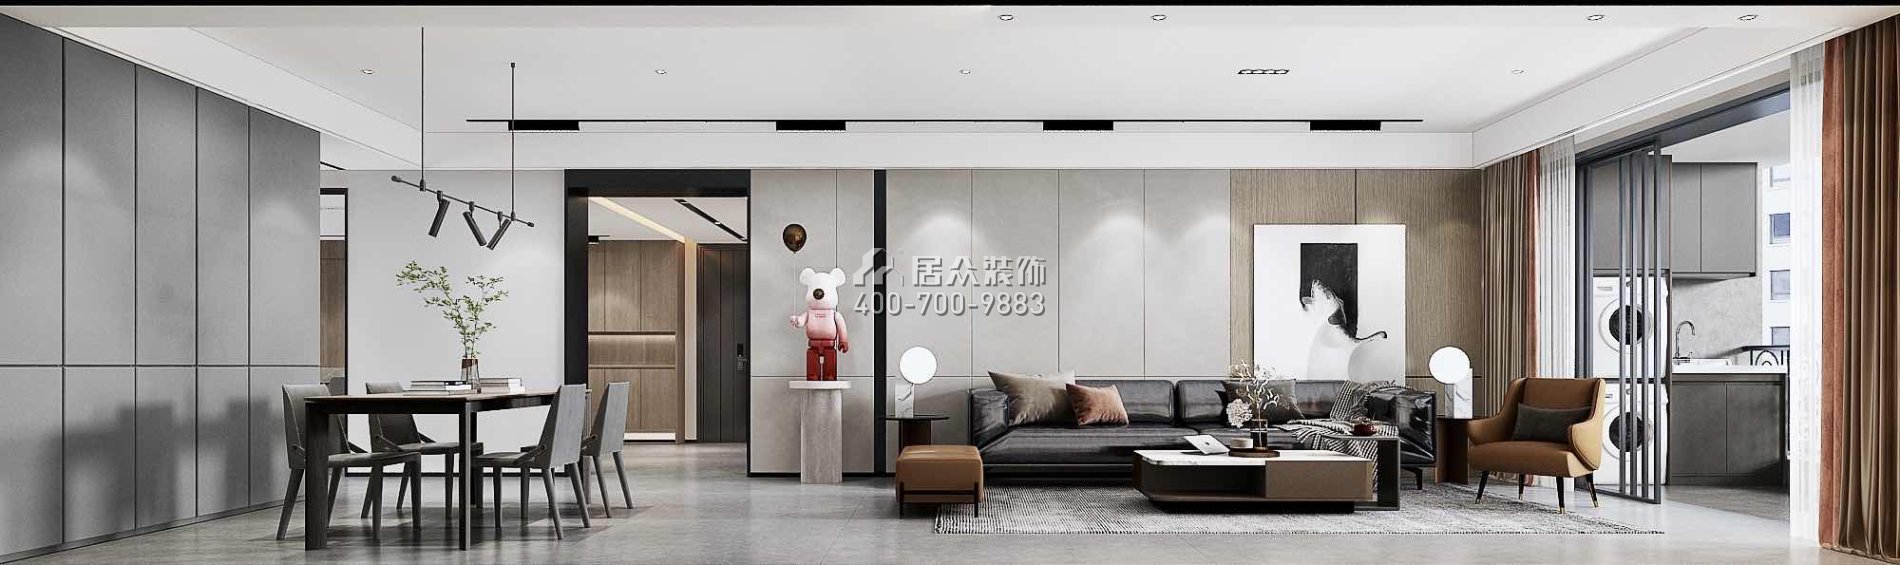 南海玫瑰園三期180平方米現代簡約風格平層戶型客廳裝修效果圖